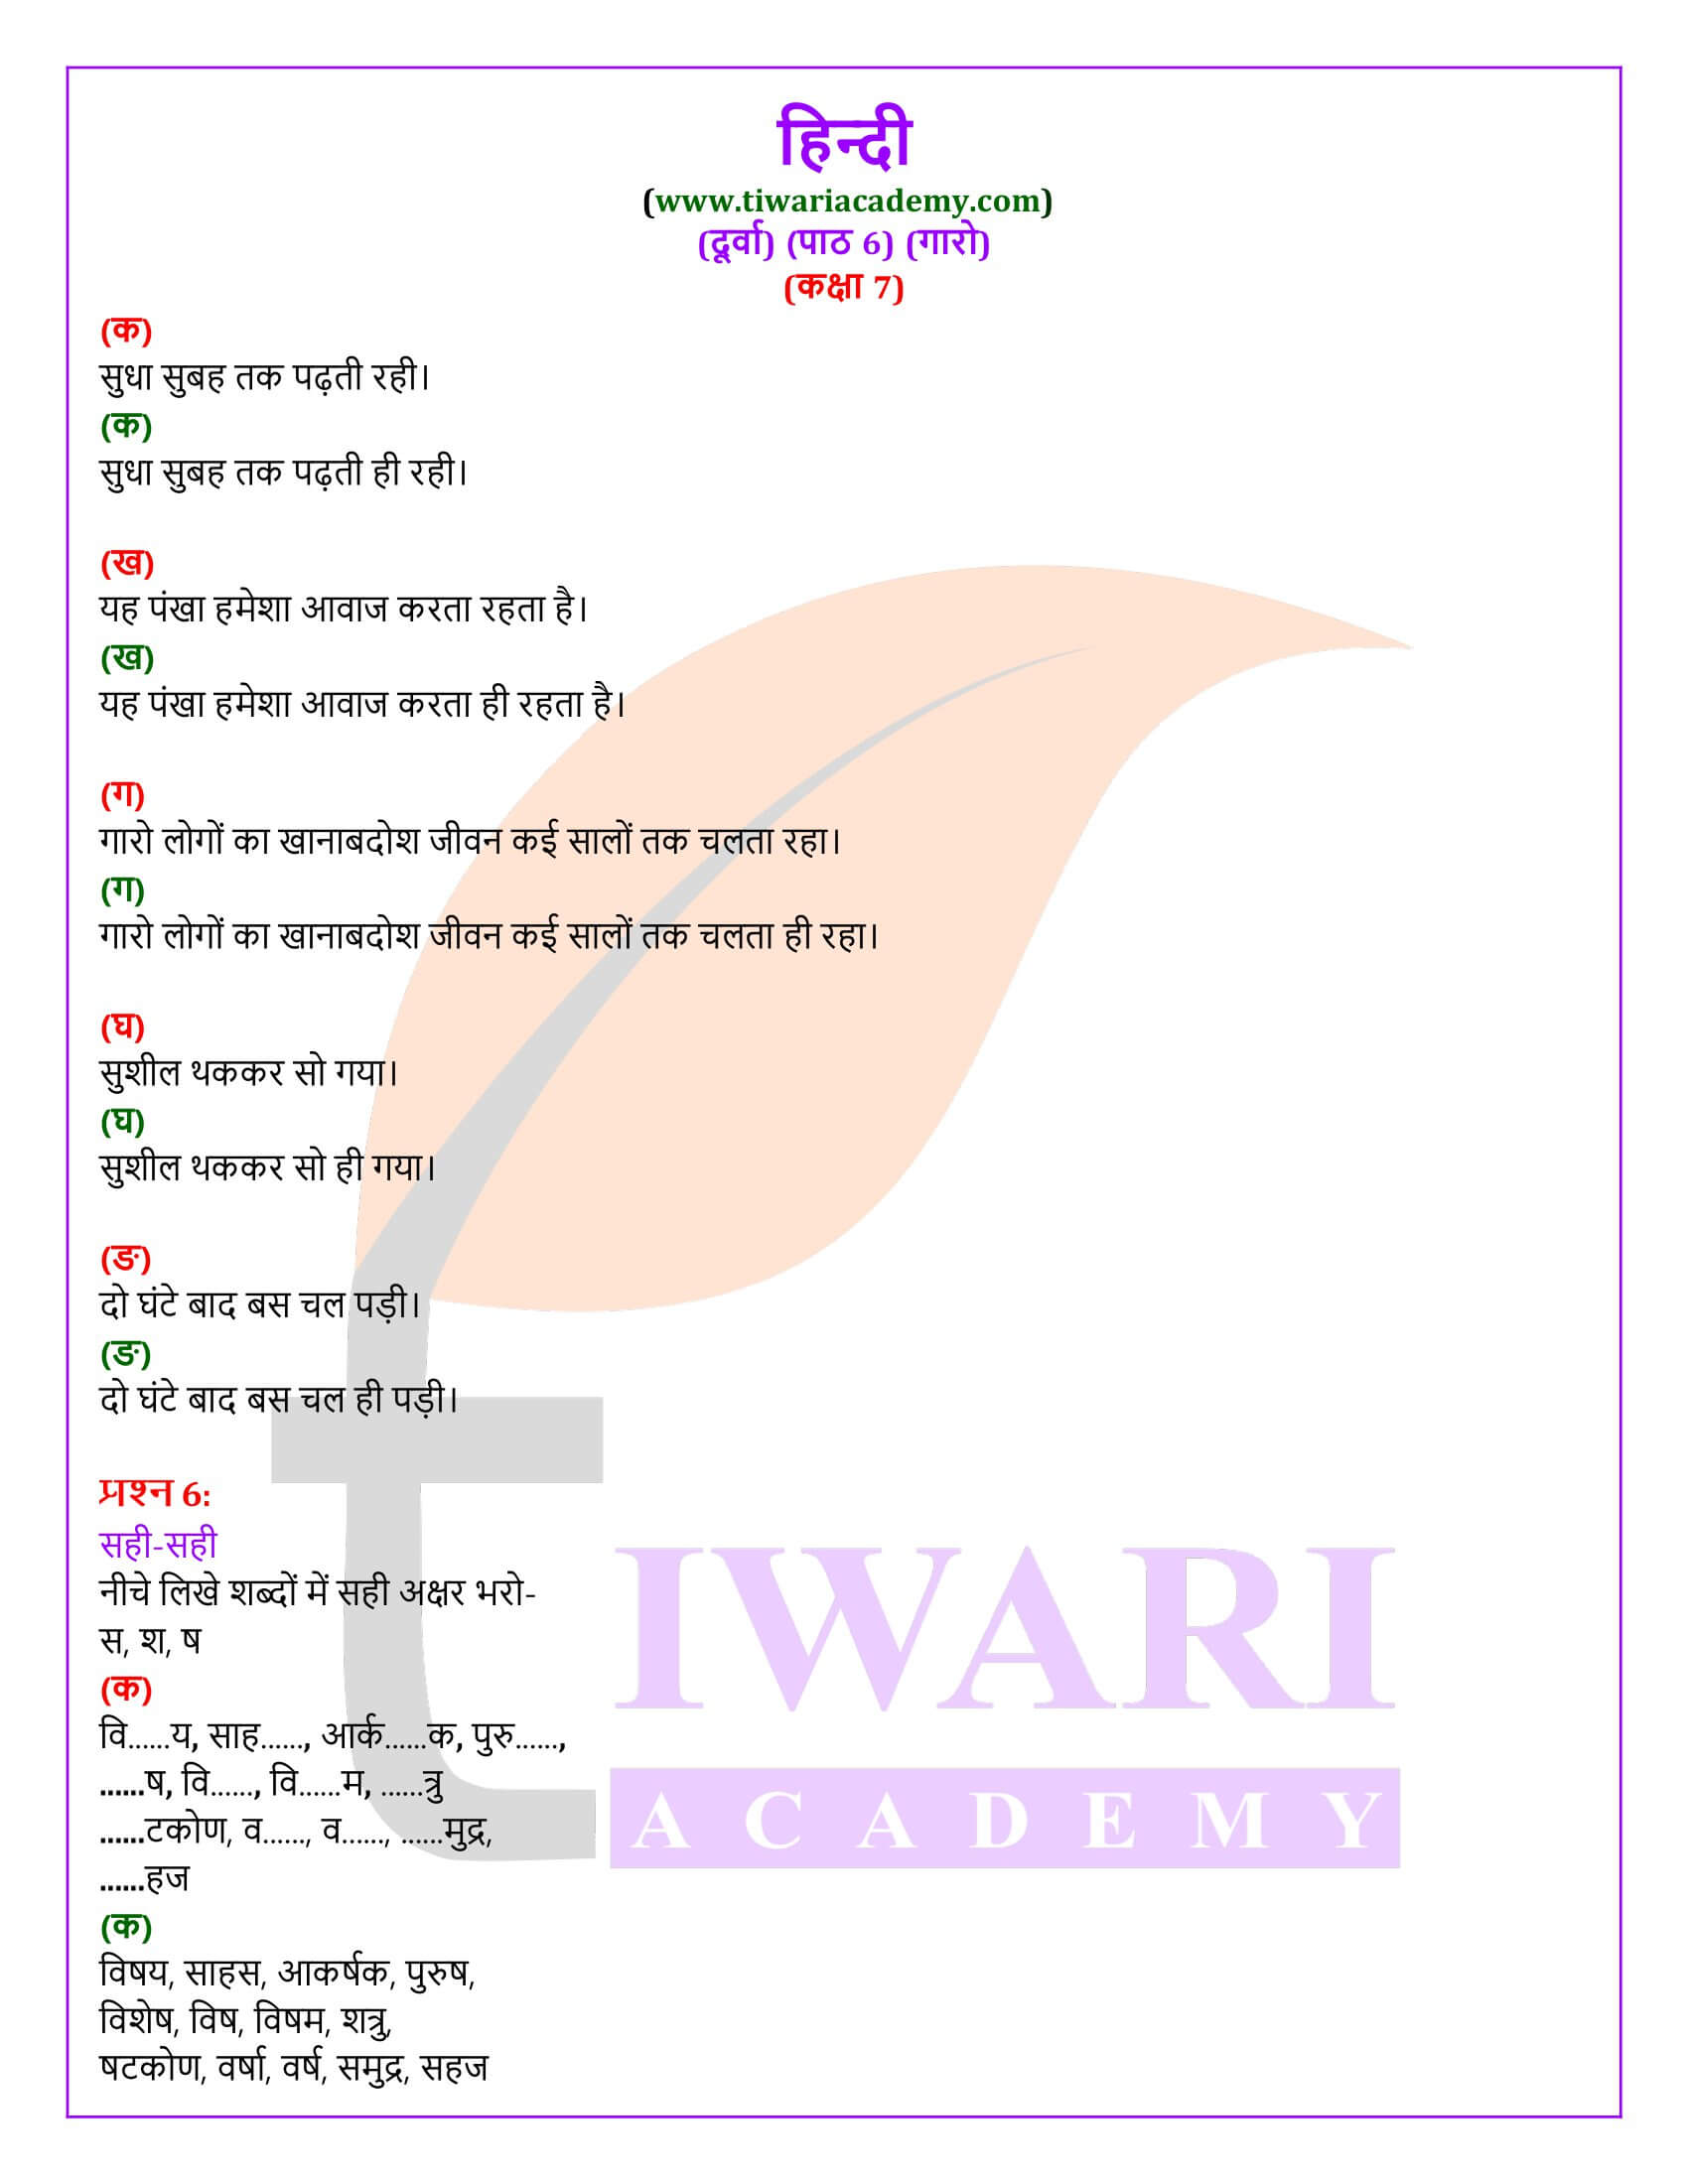 कक्षा 7 हिंदी दूर्वा अध्याय 6 गारो